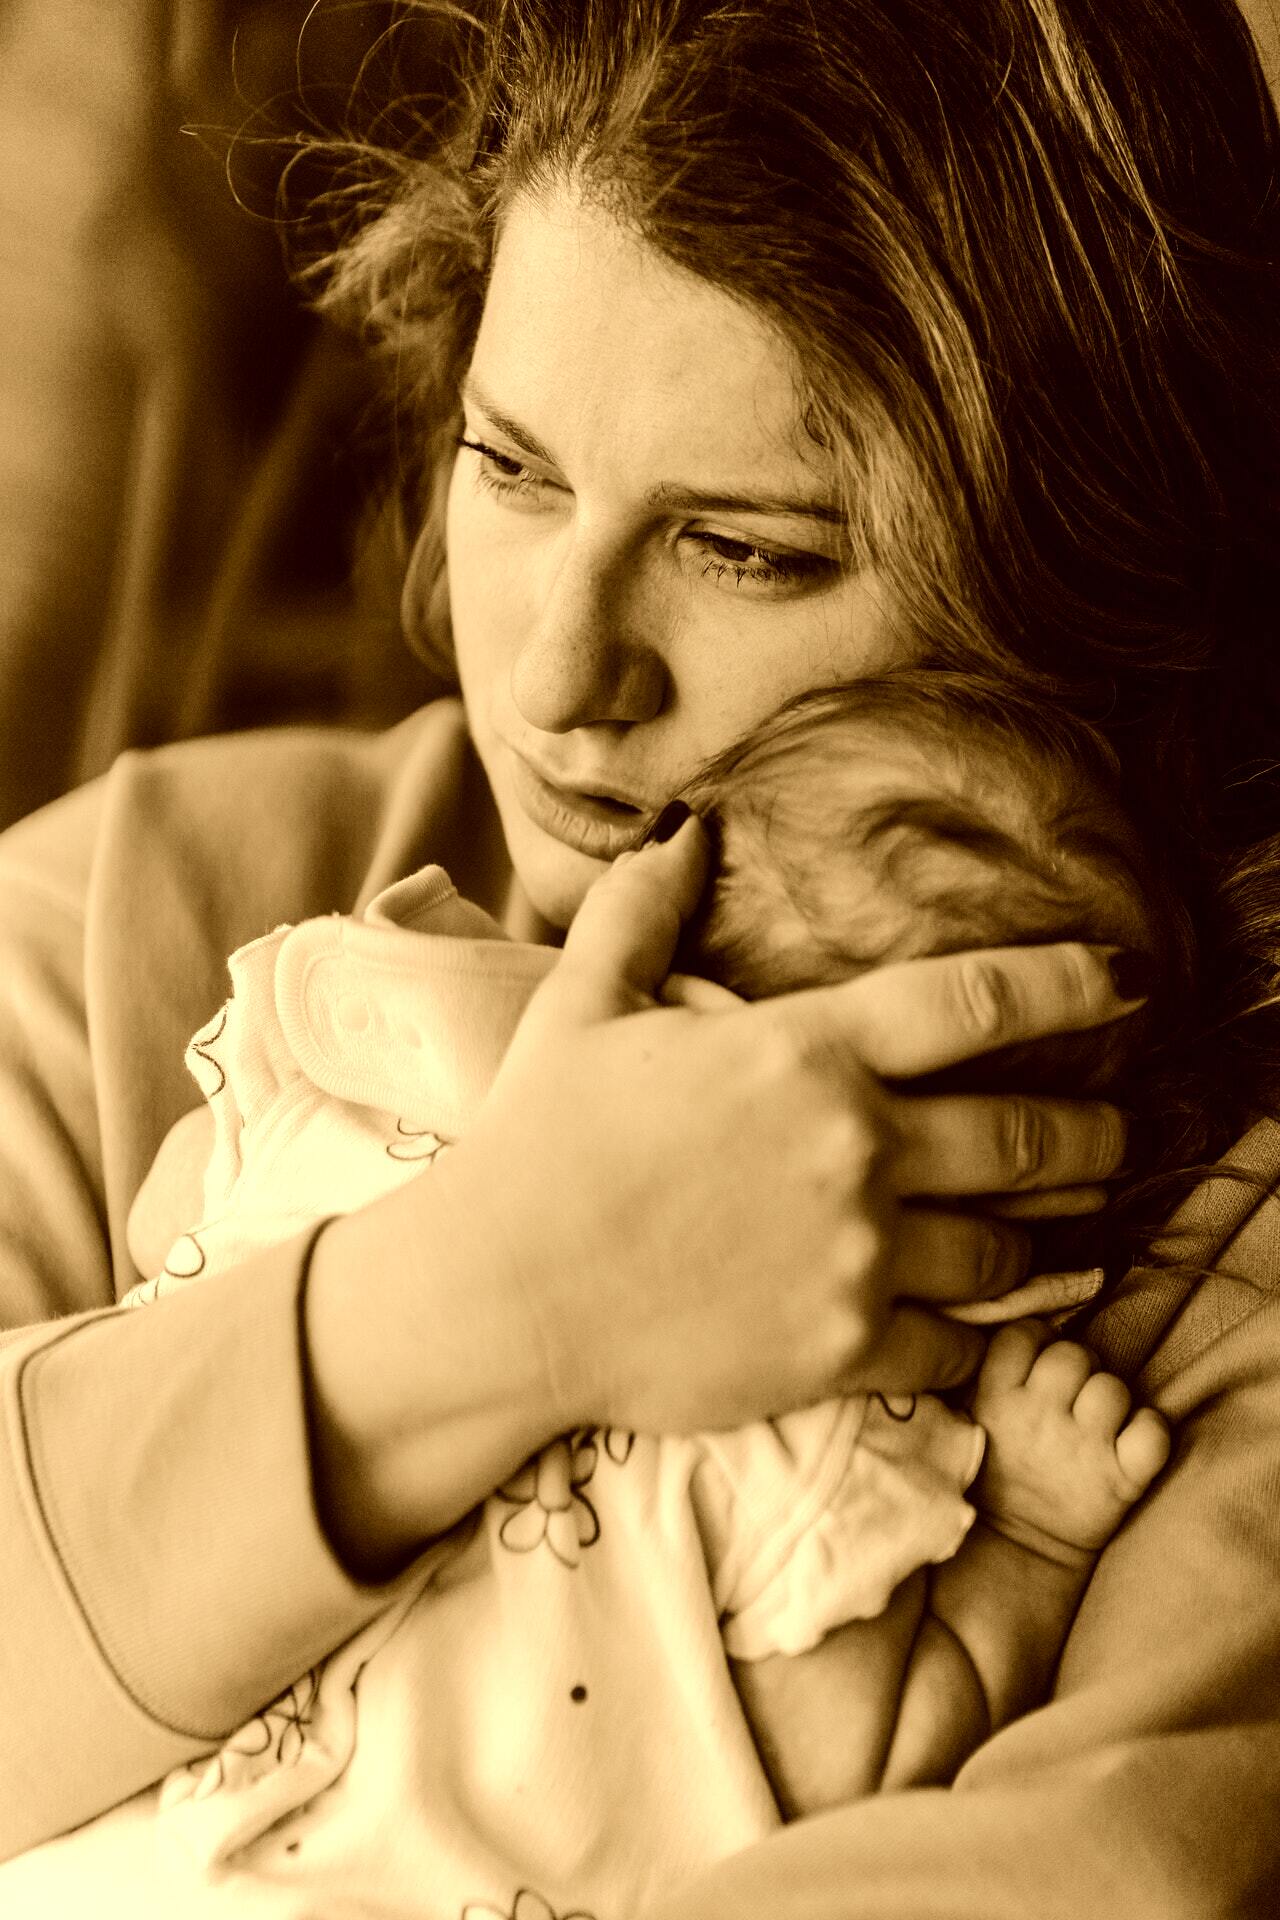 Emily était enceinte, seule, et luttait contre sa santé mentale. | Source : Pexels